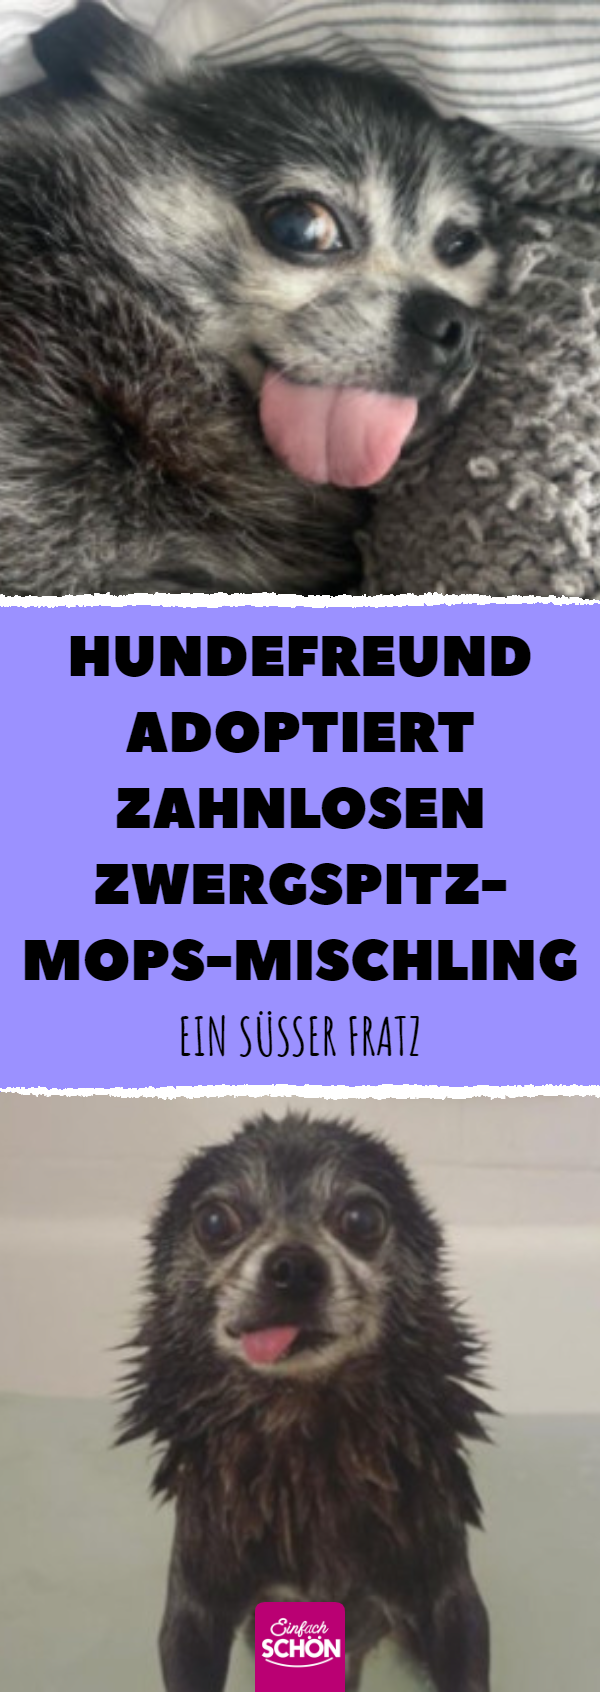 Hundefreund adoptiert zahnlosen Zwergspitz-Mops-Mischling